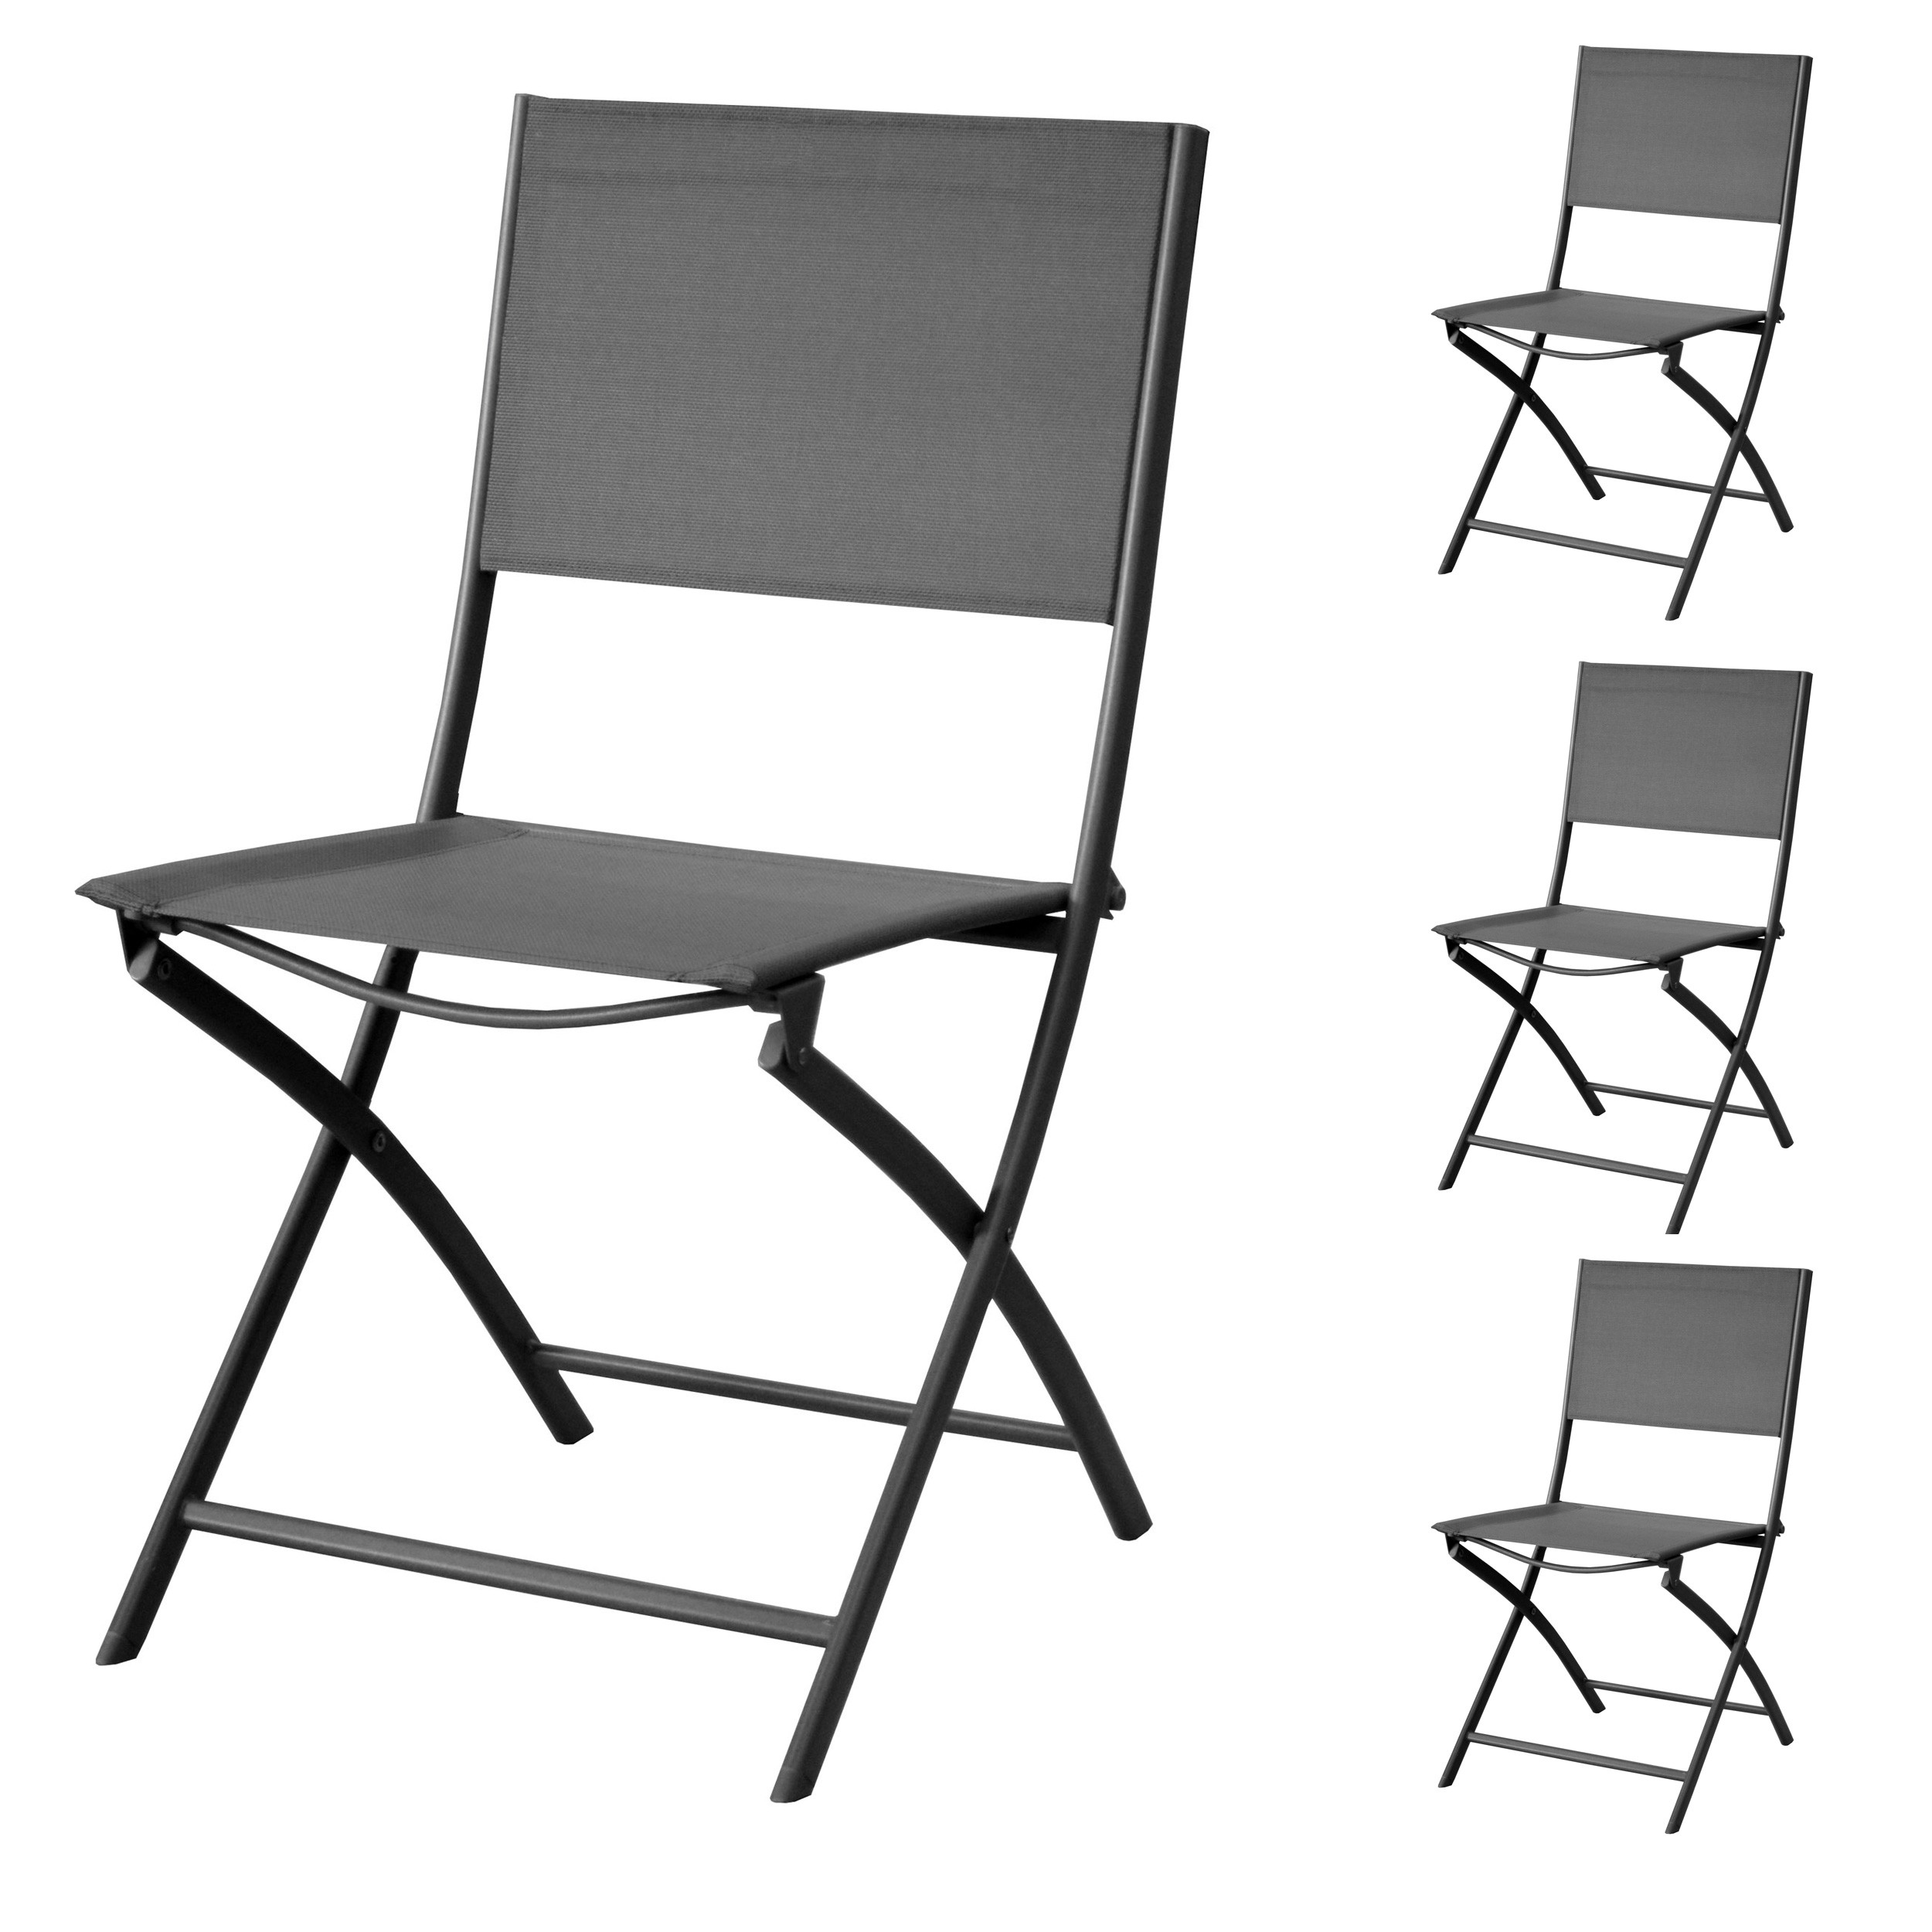 Chaise de jardin Santos pliable grise (lot de 4)  achetez les chaises